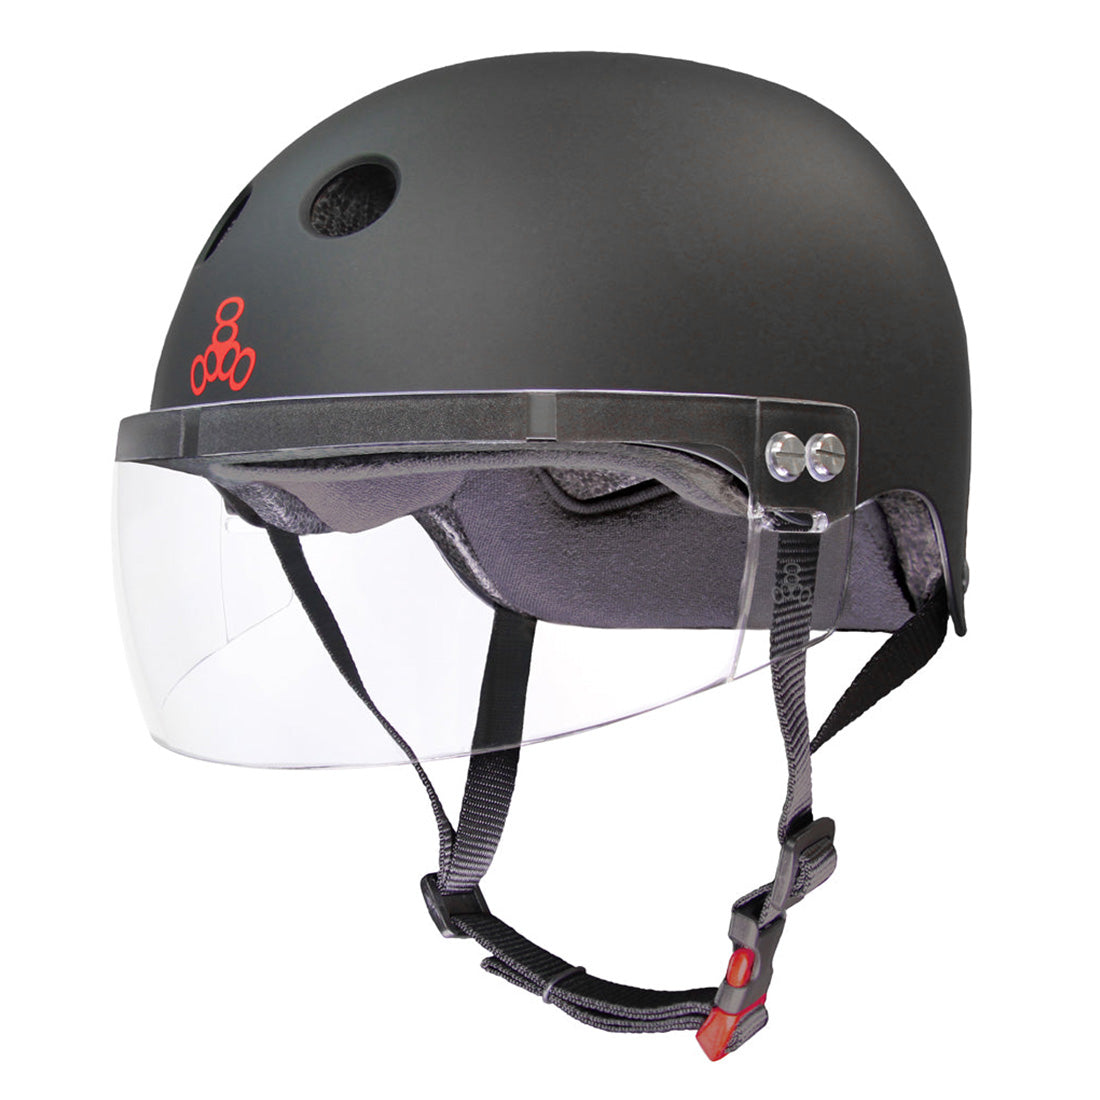 Triple 8 THE Cert SS Visor Helmet - Black Rubber Helmets